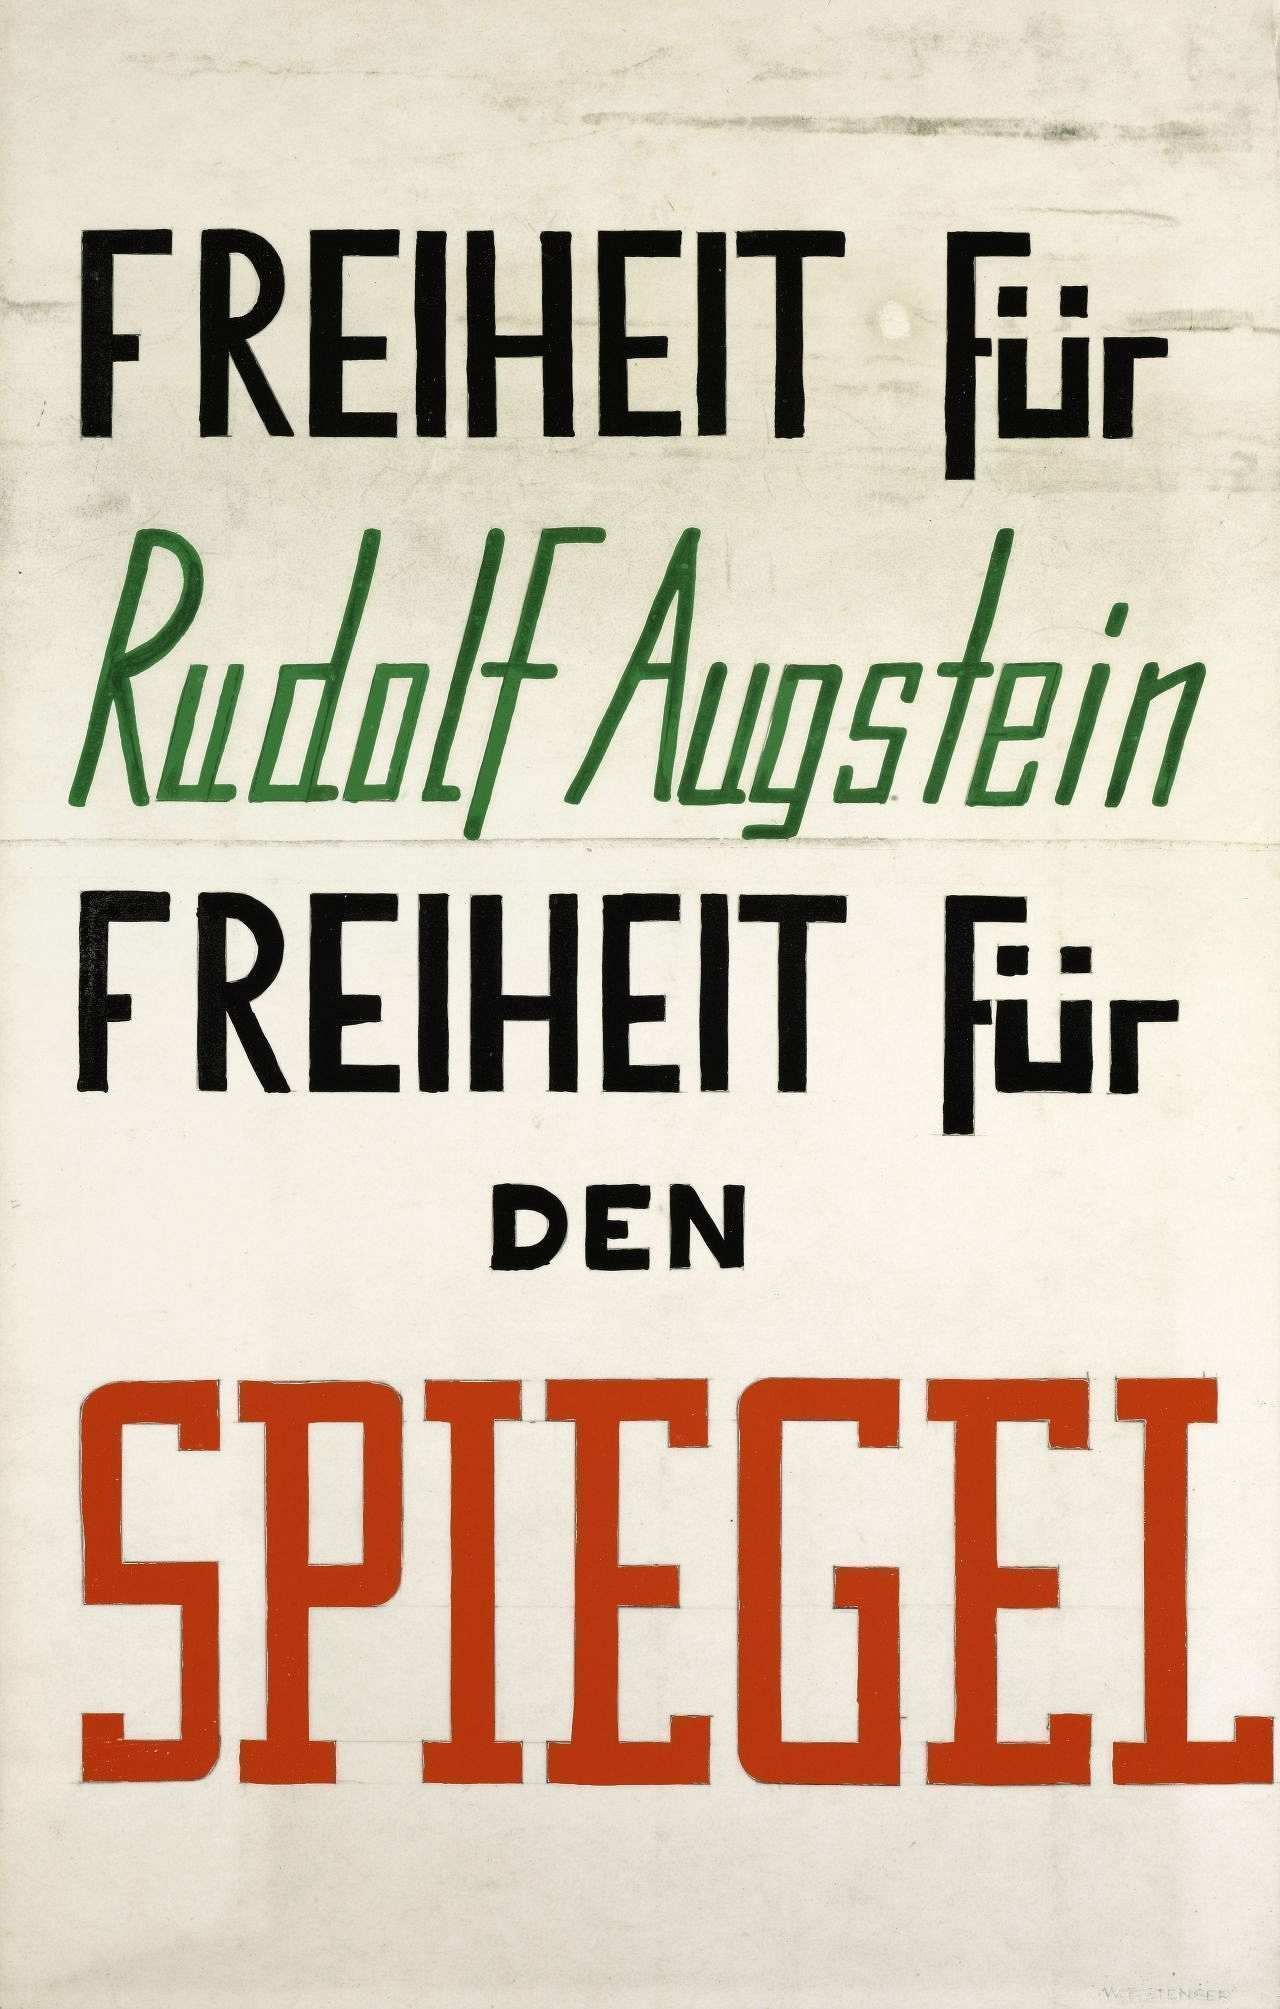 Weißes Plakat mit dem Text in Schwarz, Grün und Rot. Schwarze Schrift: Freiheit für/Freiheit für den. Grüne Schrift: Rudolf Augstein. Rote Schrift: Spiegel.